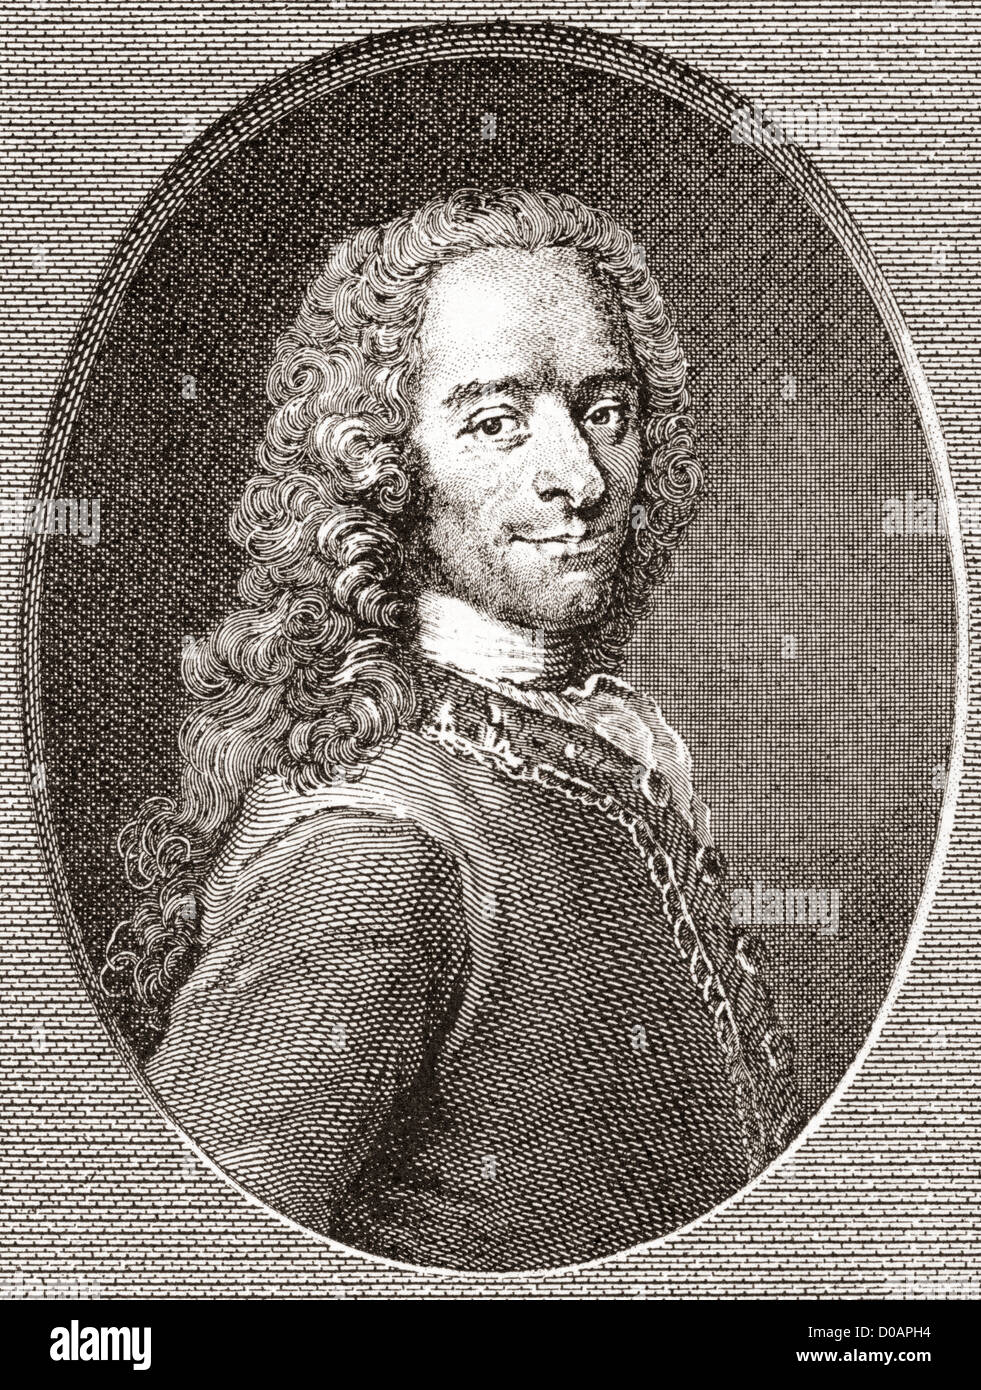 François-Marie Arouet, 1694-1778, bekannt durch seine Nom De Plume Voltaire. Französischer Schriftsteller, Historiker und Philosoph Erleuchtung. Stockfoto